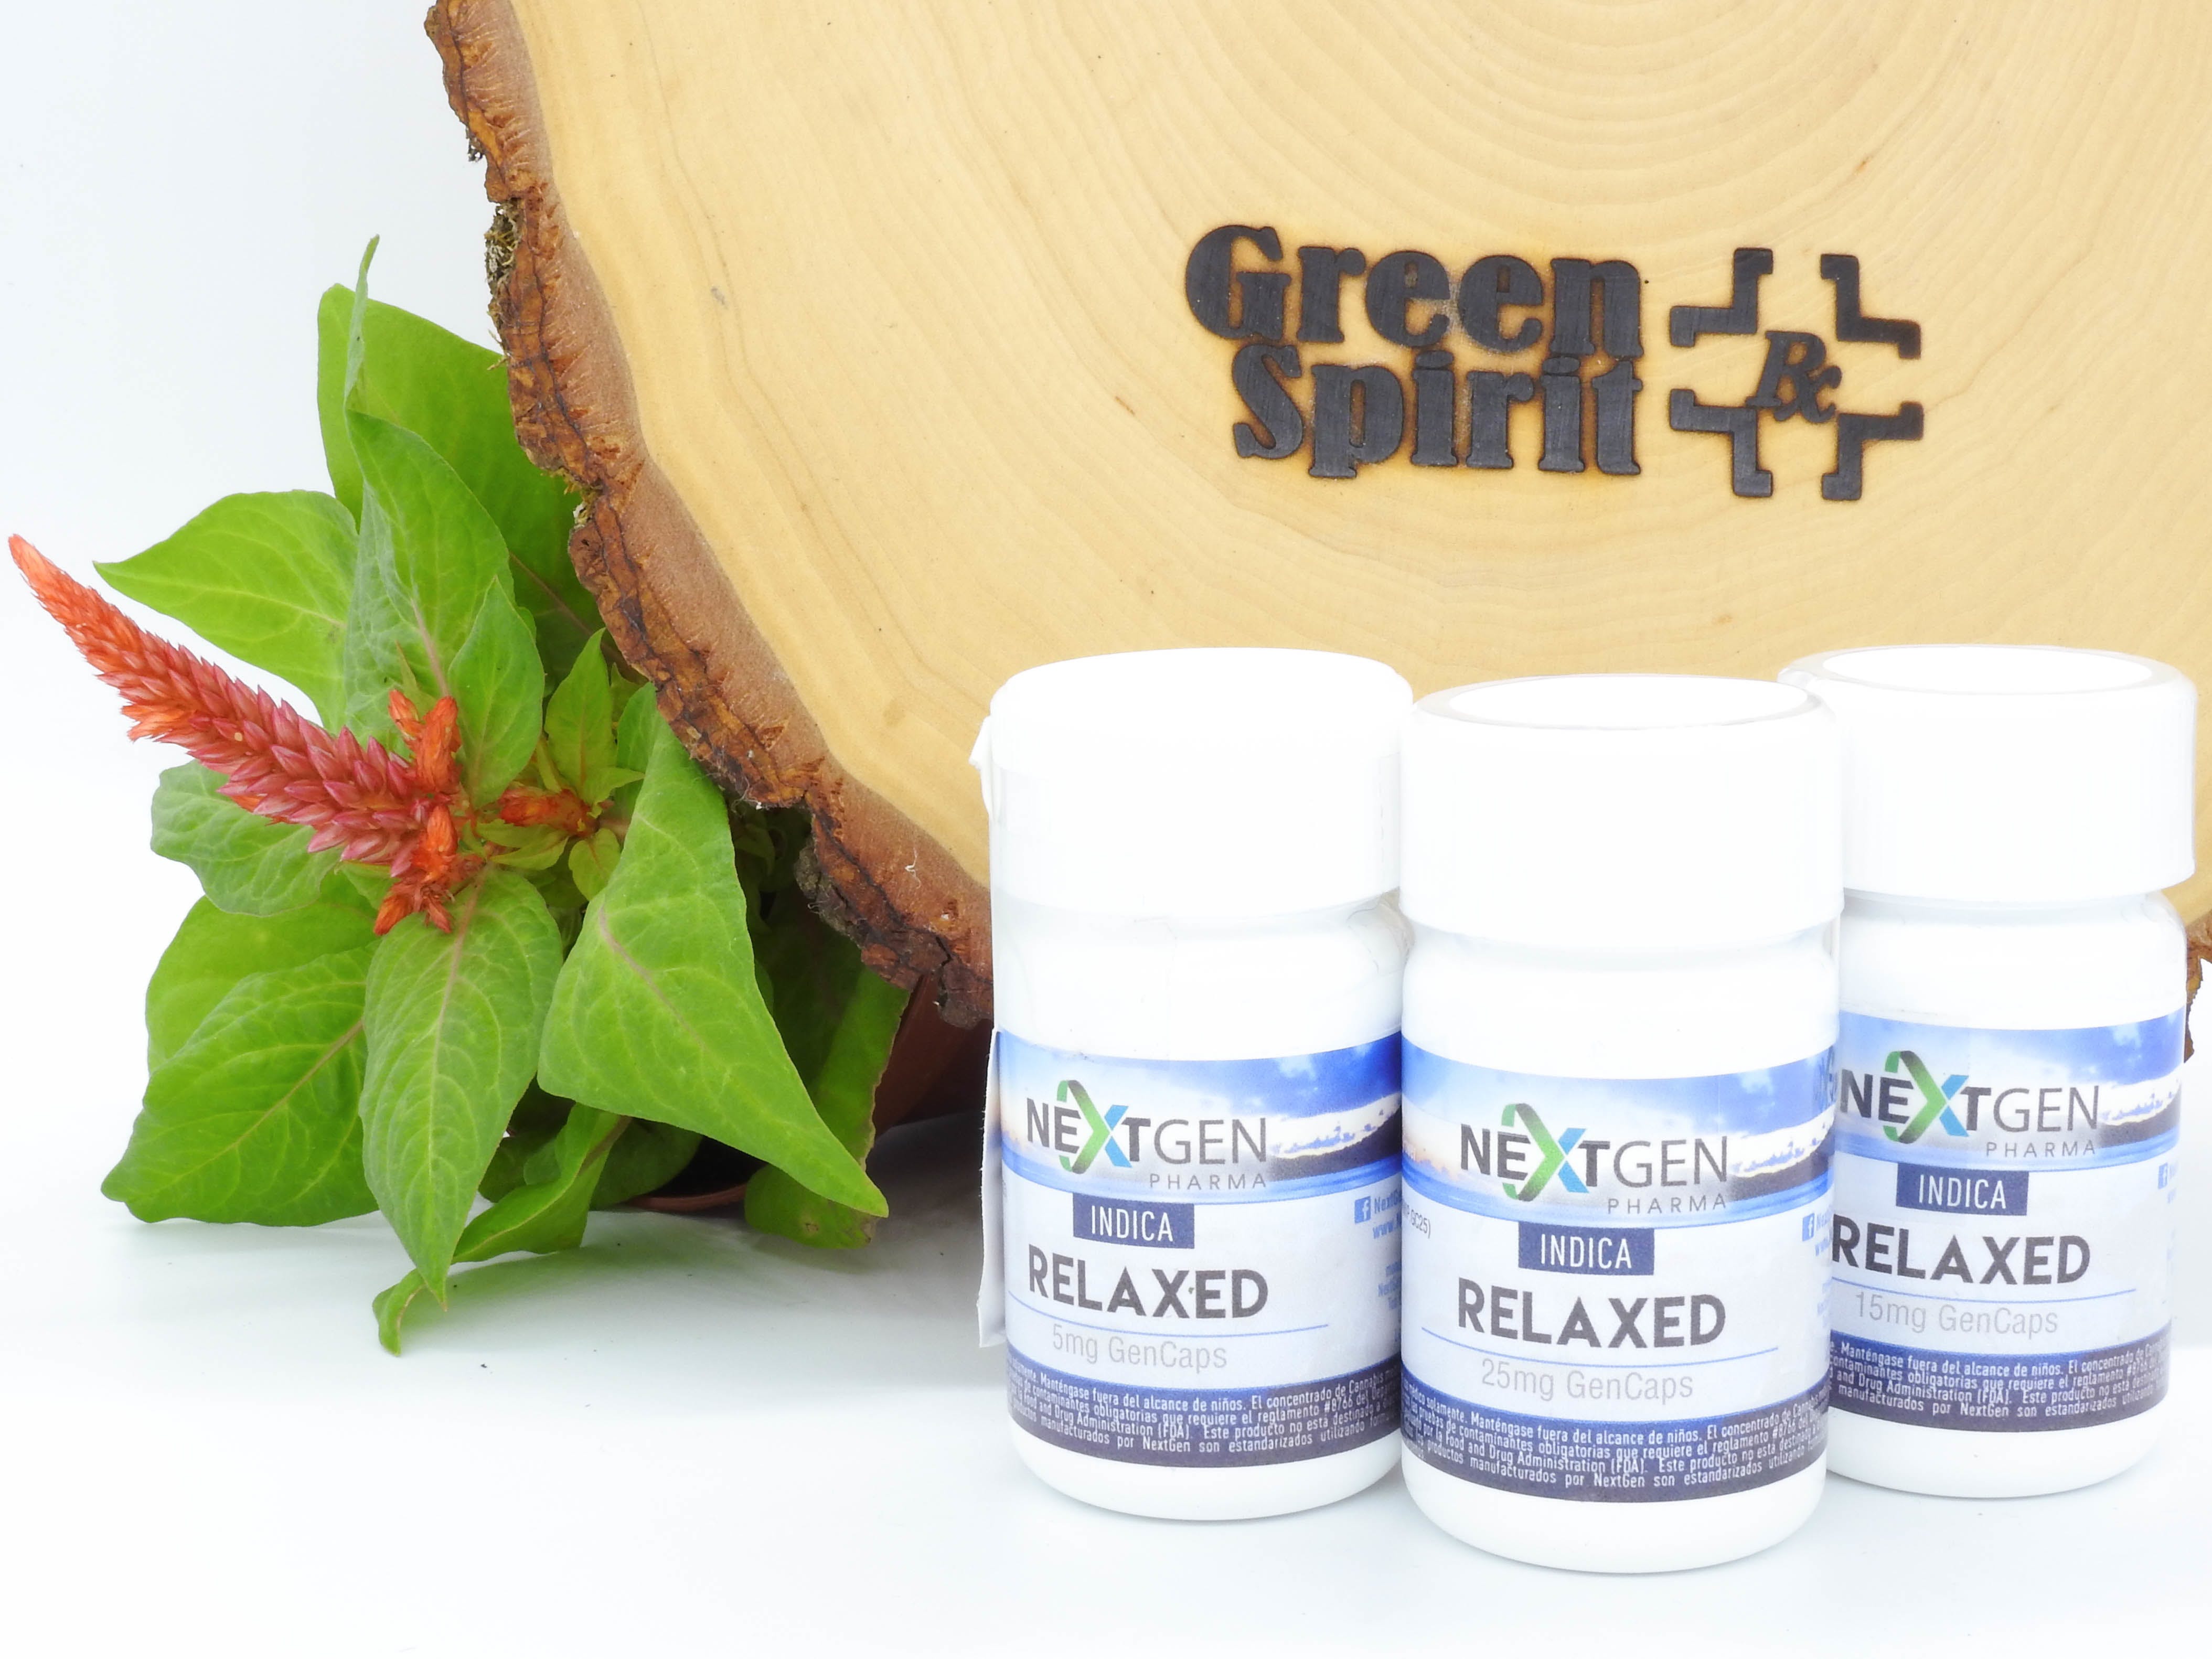 marijuana-dispensaries-green-spirit-rx-in-san-juan-relaxed-capsules